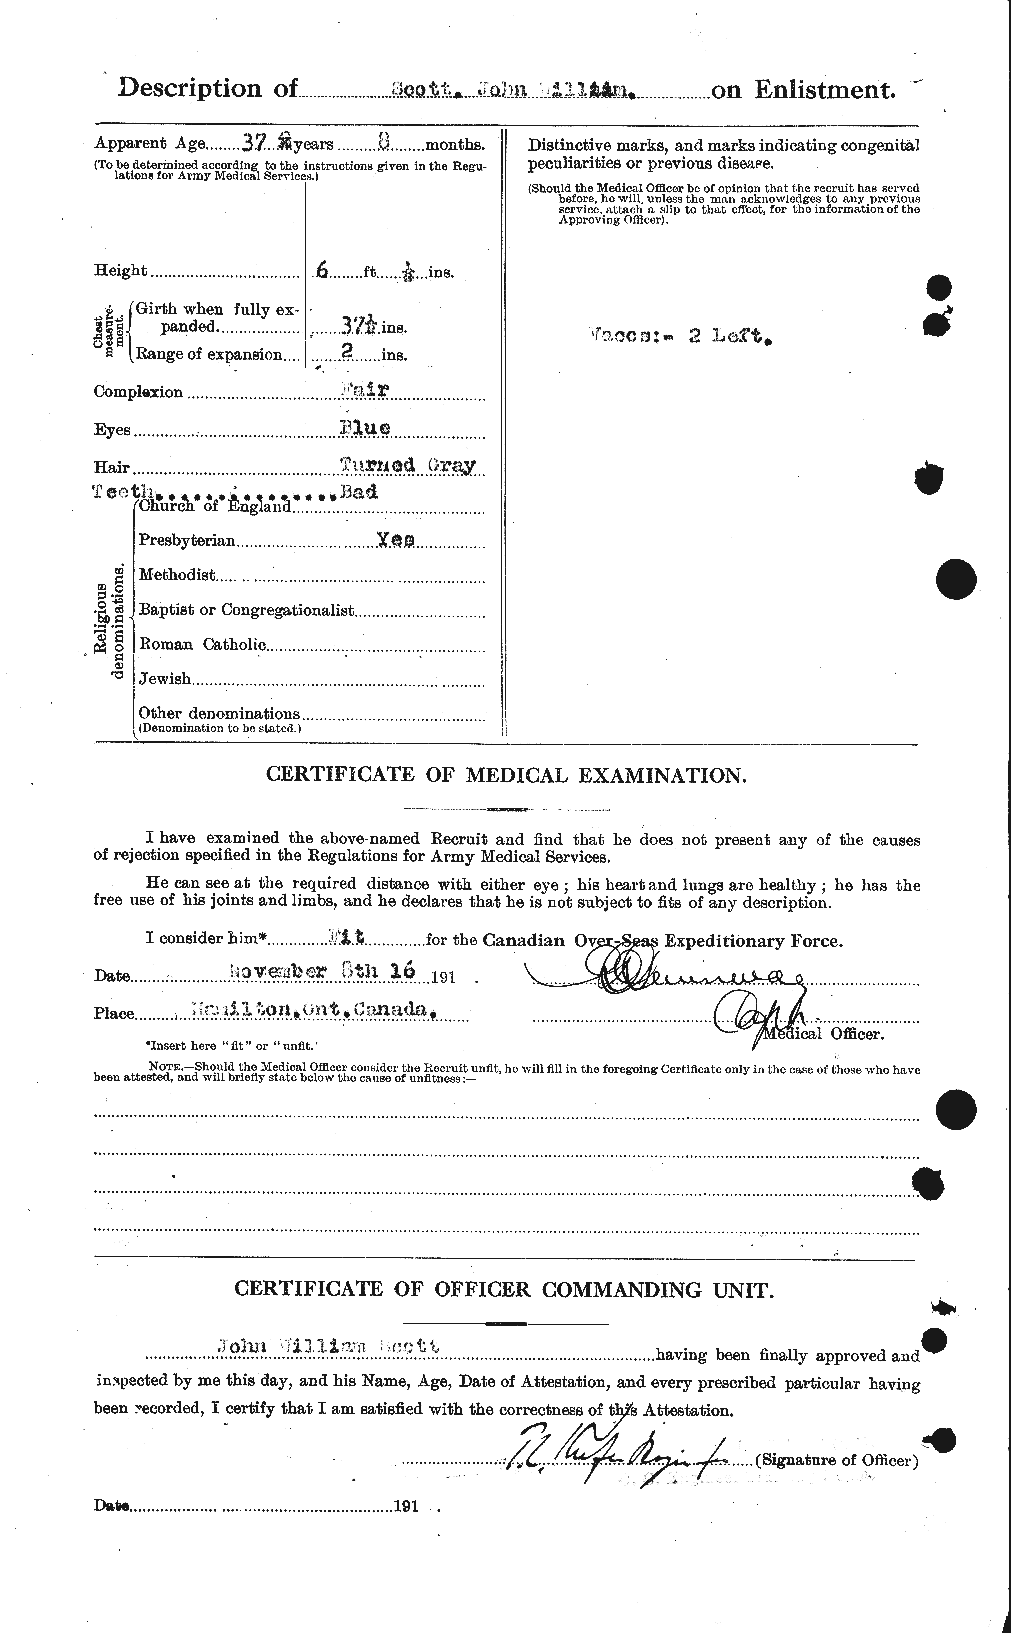 Dossiers du Personnel de la Première Guerre mondiale - CEC 084405b